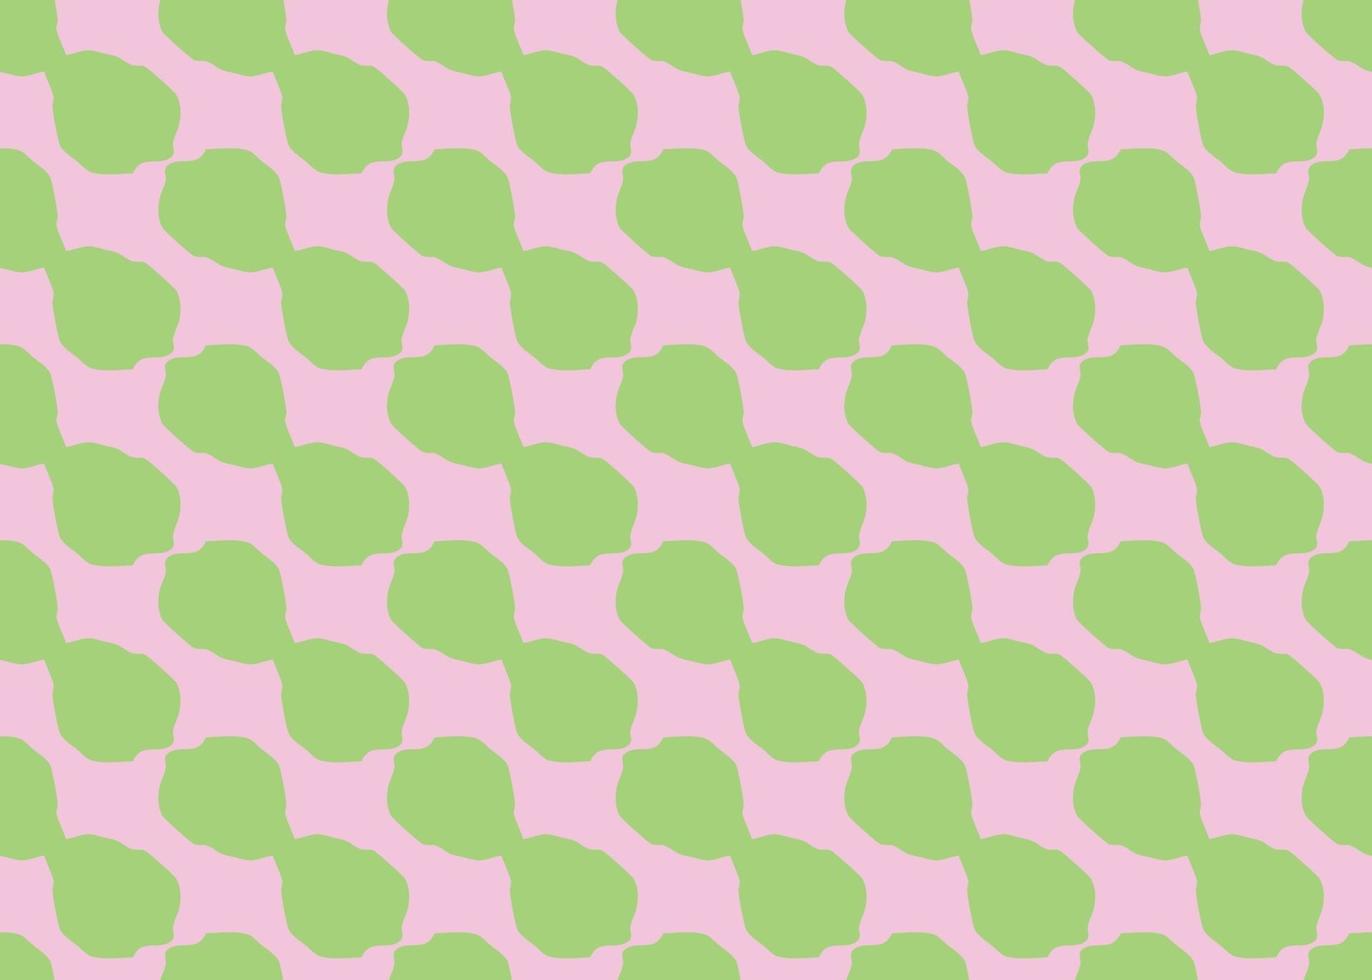 Vektor Textur Hintergrund, nahtloses Muster. handgezeichnete, rosa, grüne Farben.